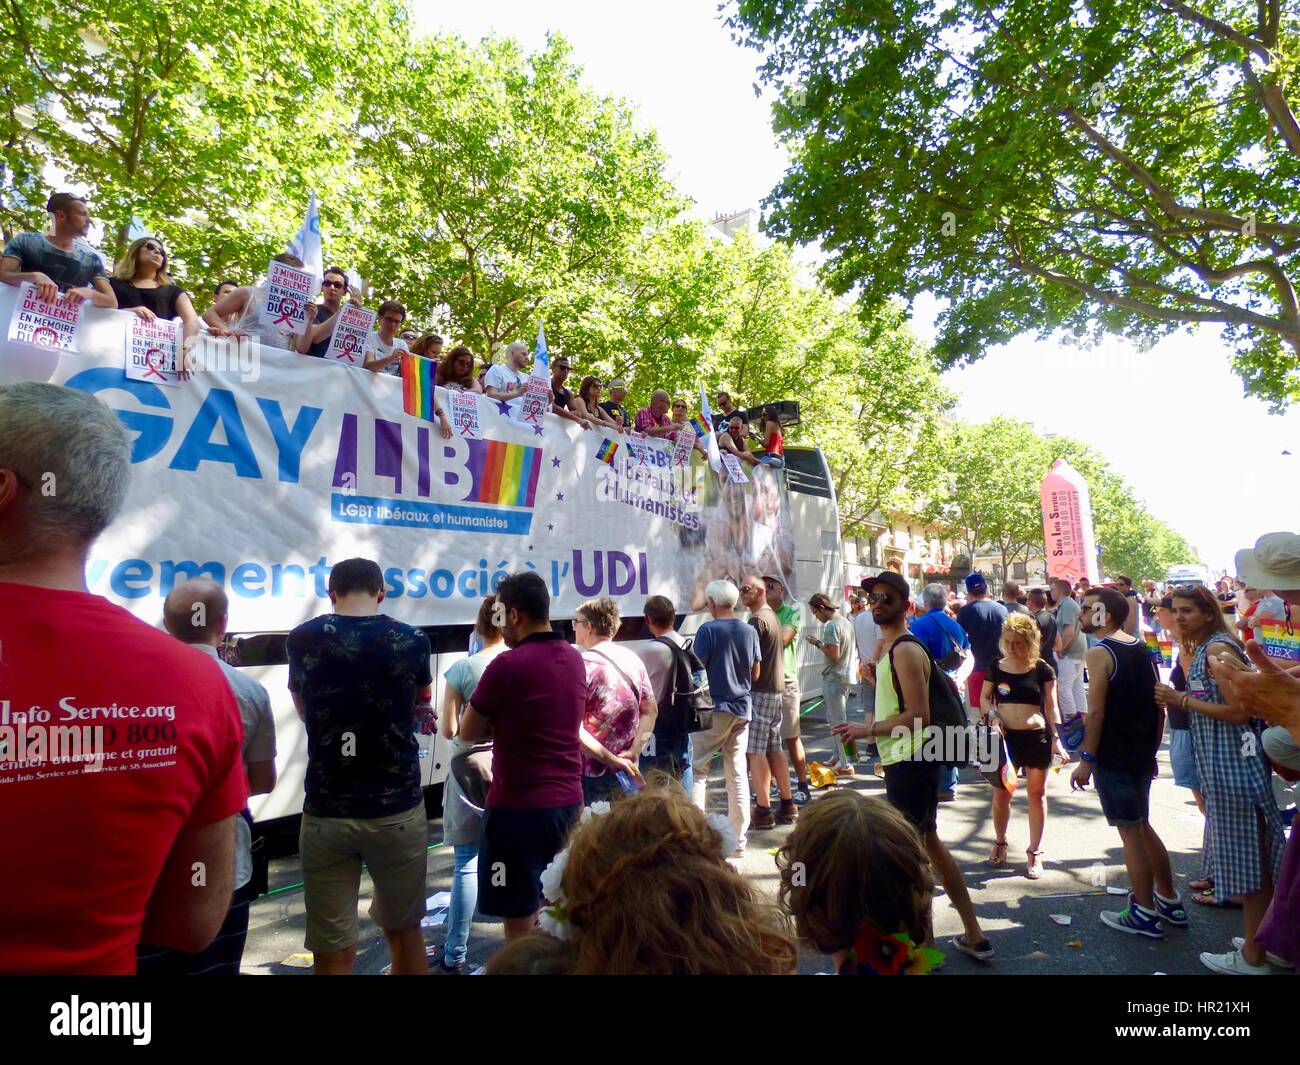 GAYLIB float, Paris Pride Parade 2015. Marche des Fiertés. Les participants détiennent symptômes au cours de moment de silence pour ceux qui sont morts du VIH/SIDA. Paris. Banque D'Images